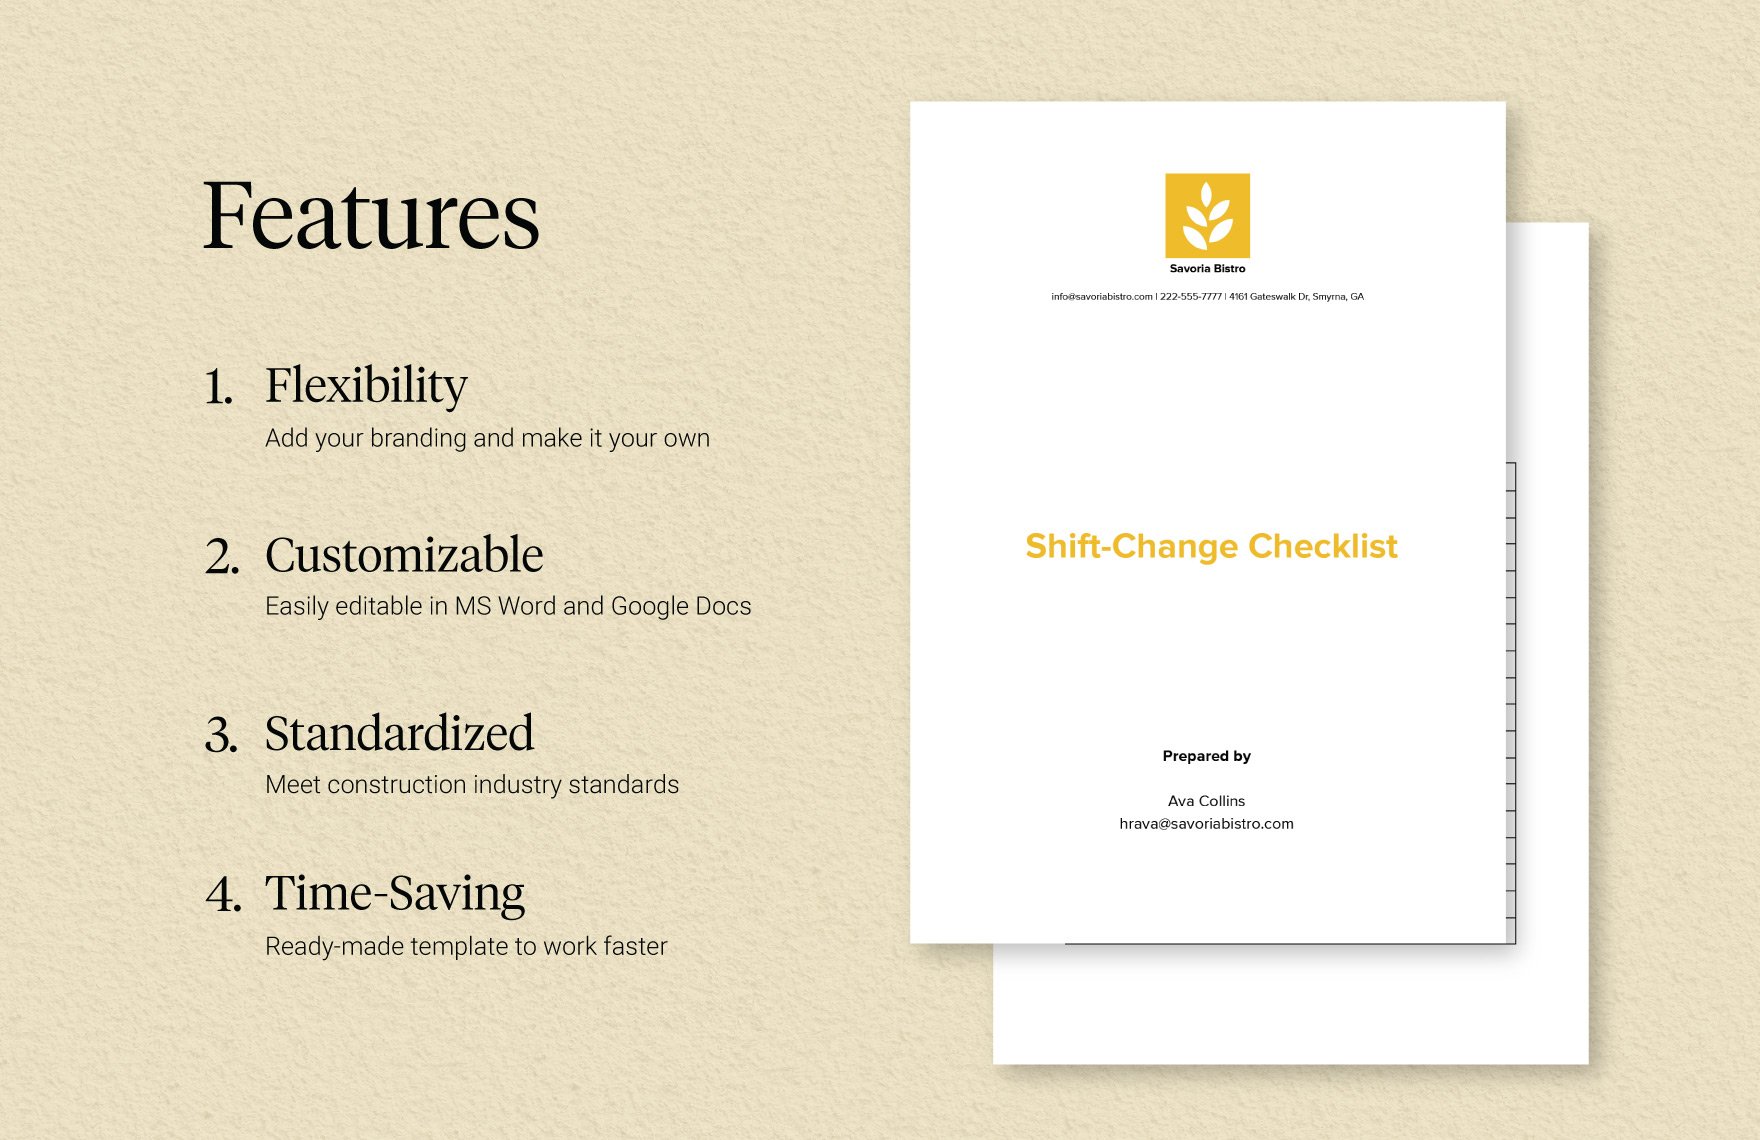 Restaurant Manager Shift-Change Checklist